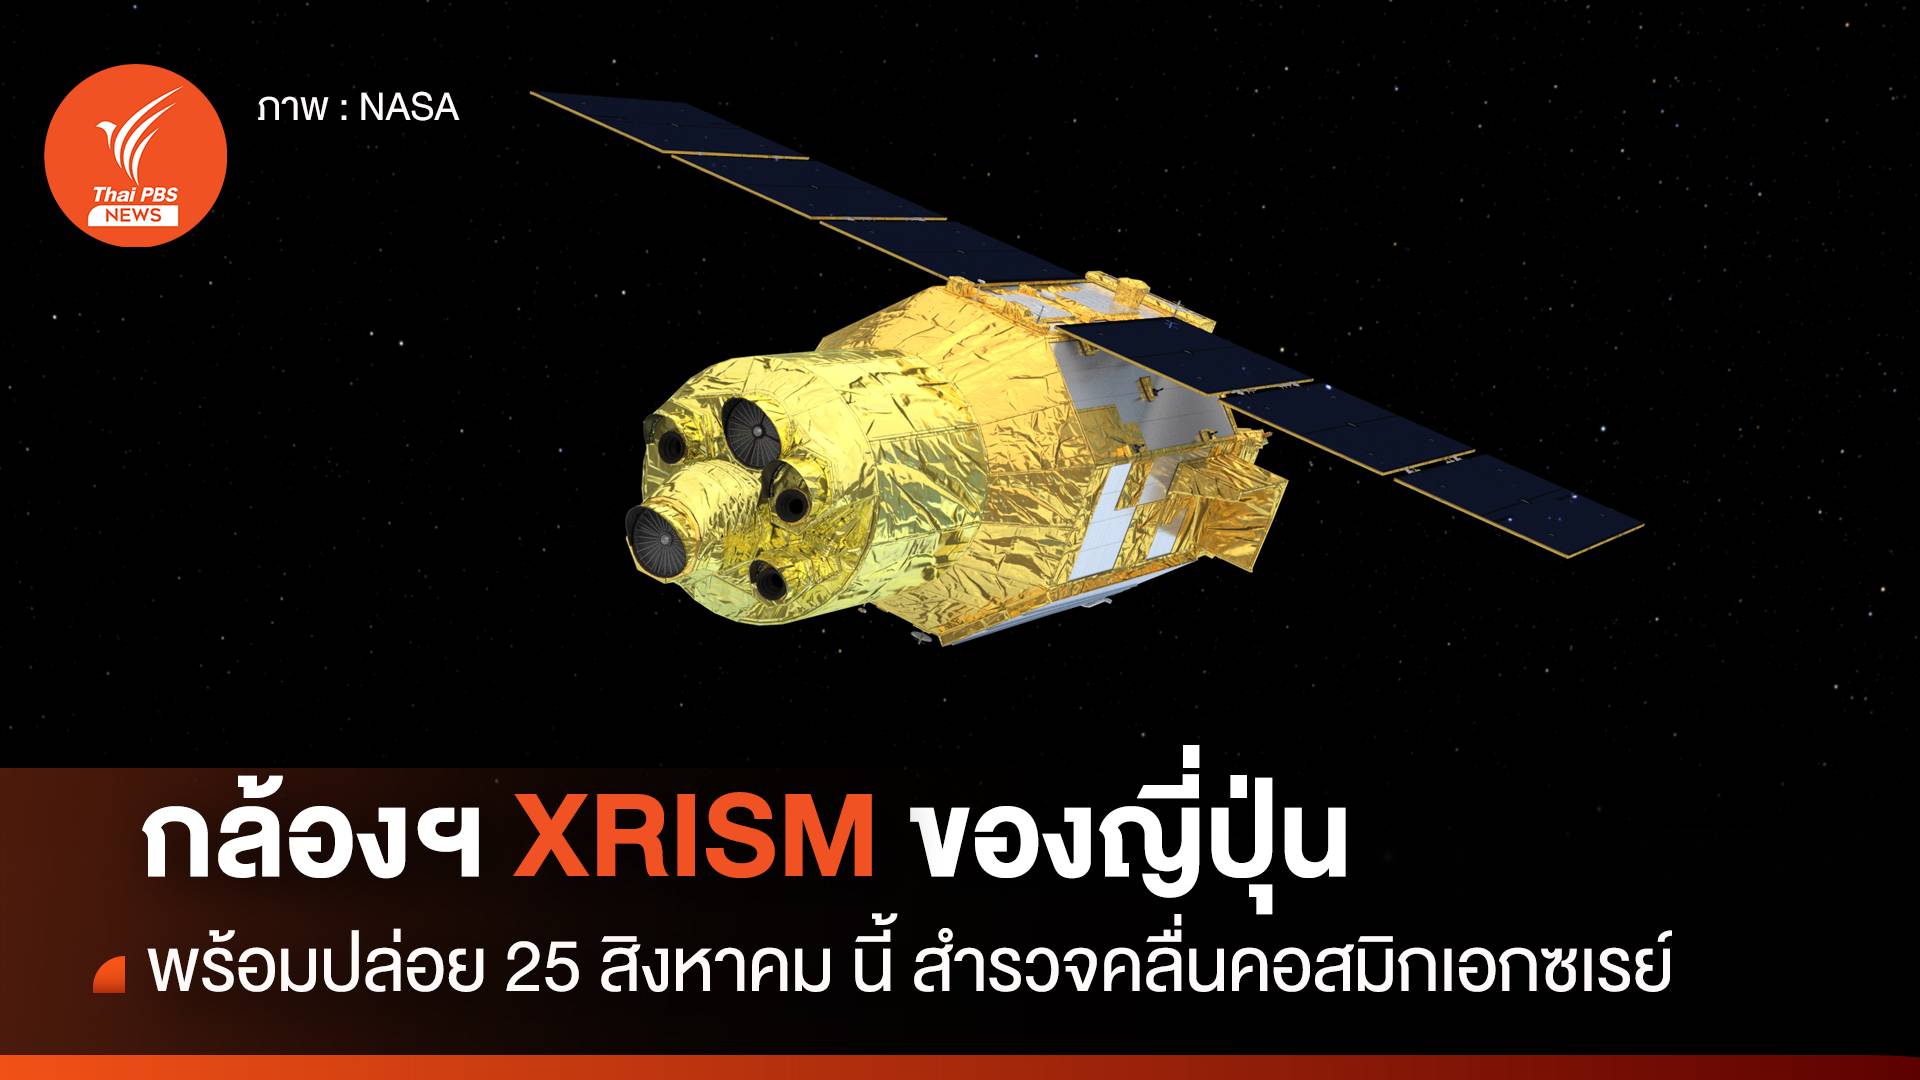 กล้องโทรทรรศน์อวกาศ XRISM ขององค์การอวกาศญี่ปุ่น พร้อมปล่อย 25 สิงหาคมนี้